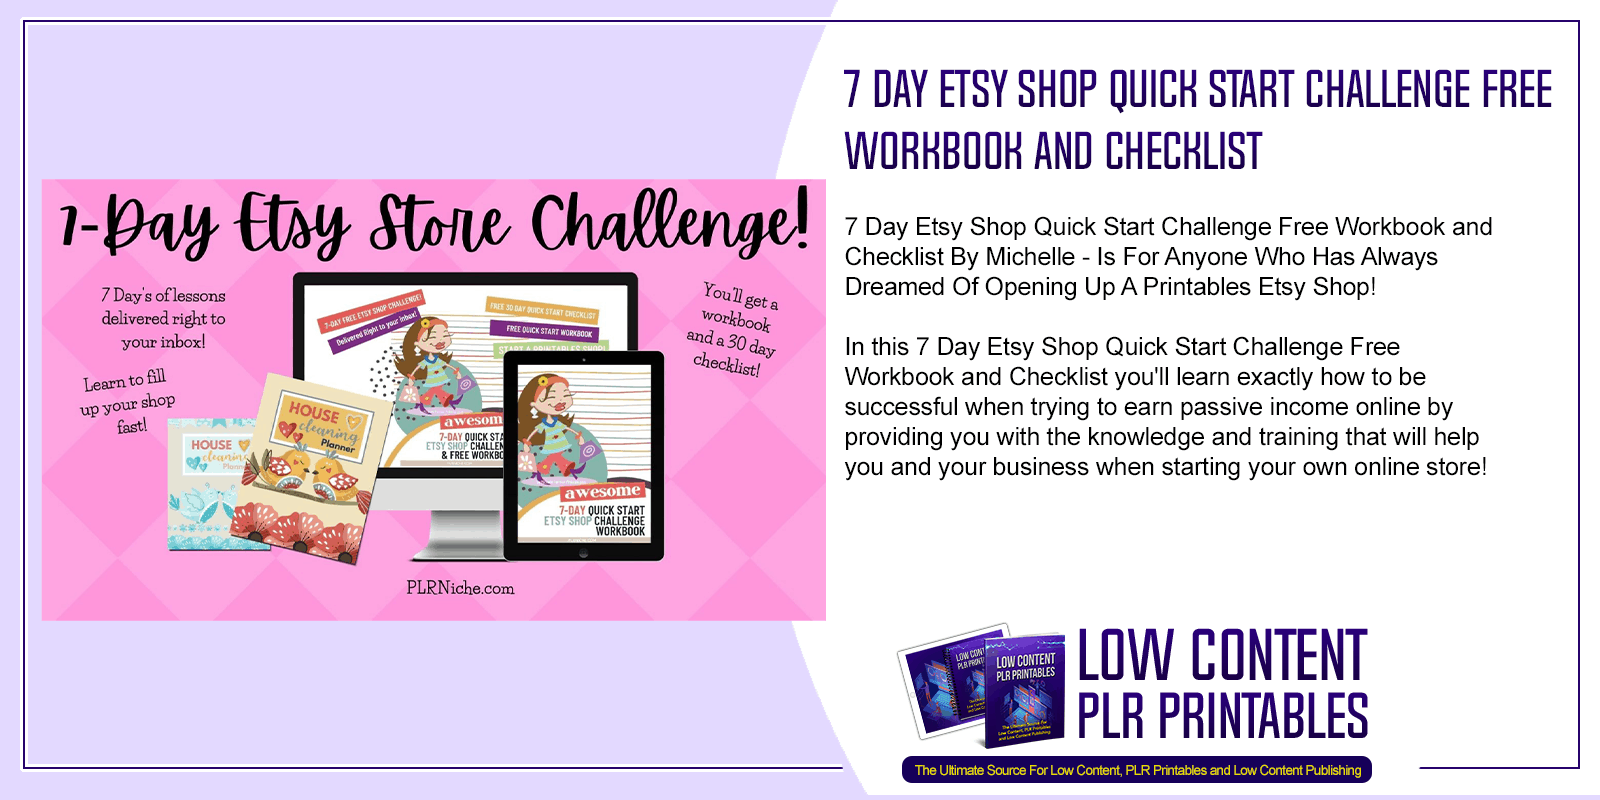 7 Day Etsy Shop Quick Start Challenge Free Workbook and Checklist